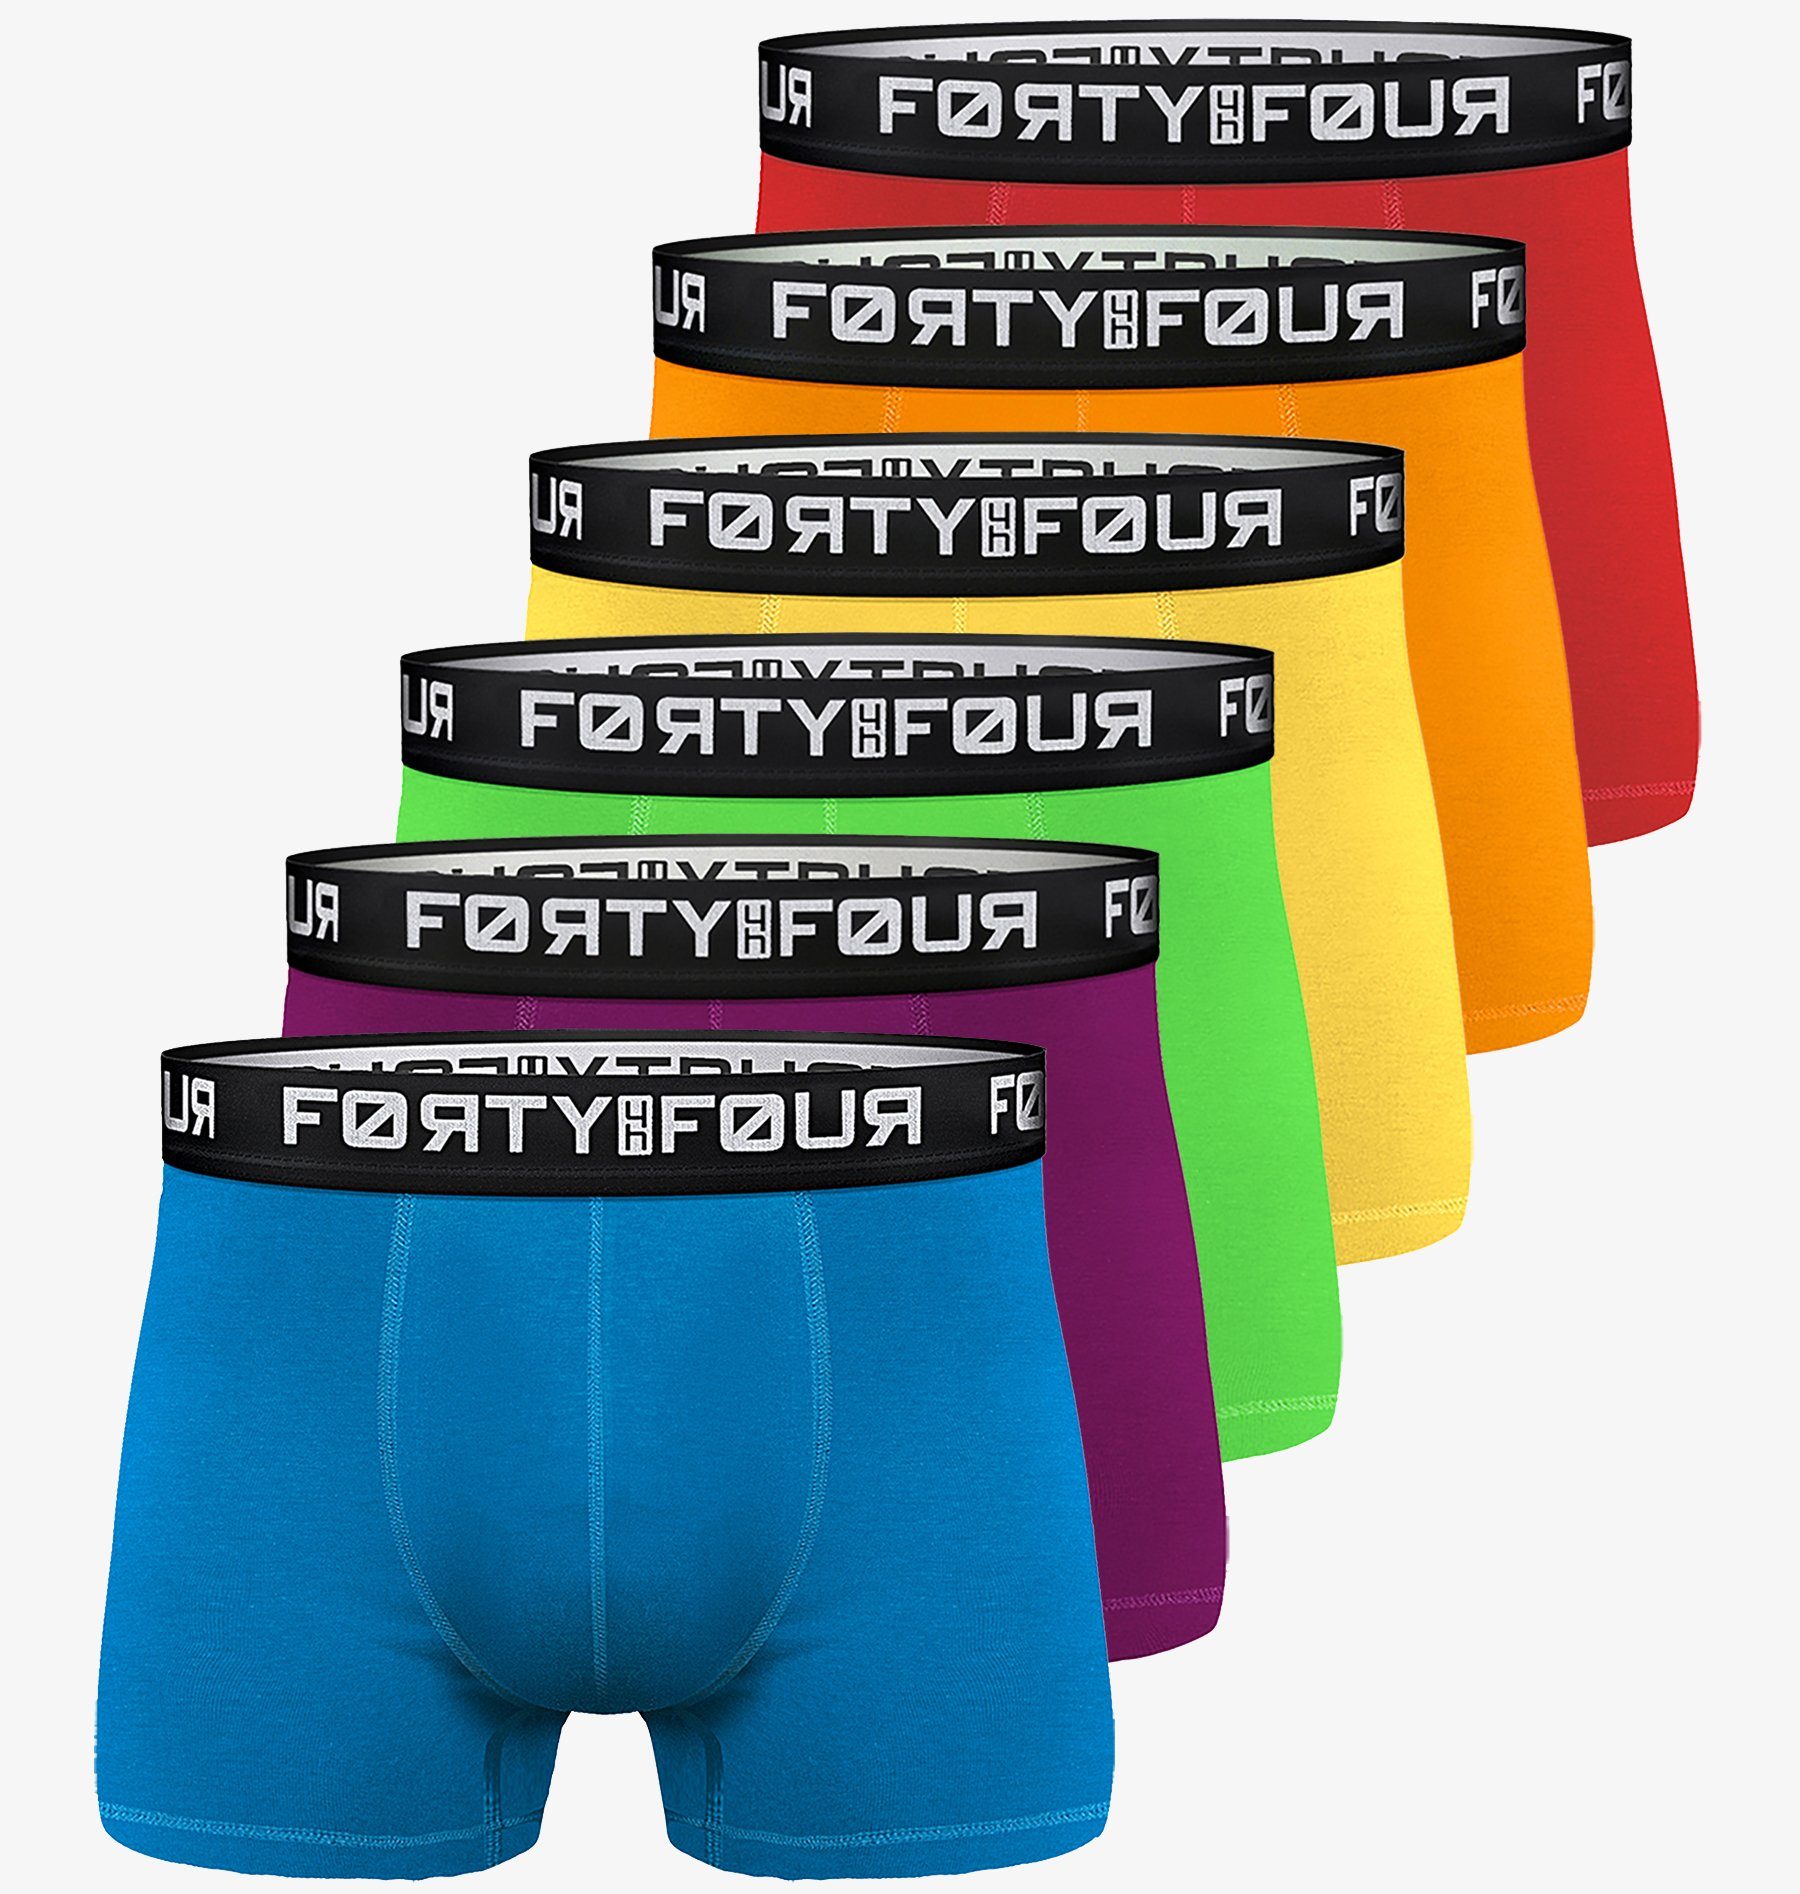 FortyFour Boxershorts Herren Männer Unterhosen Baumwolle Premium Qualität perfekte Passform (Vorteilspack, 6er Pack) S - 7XL 706c-bunt